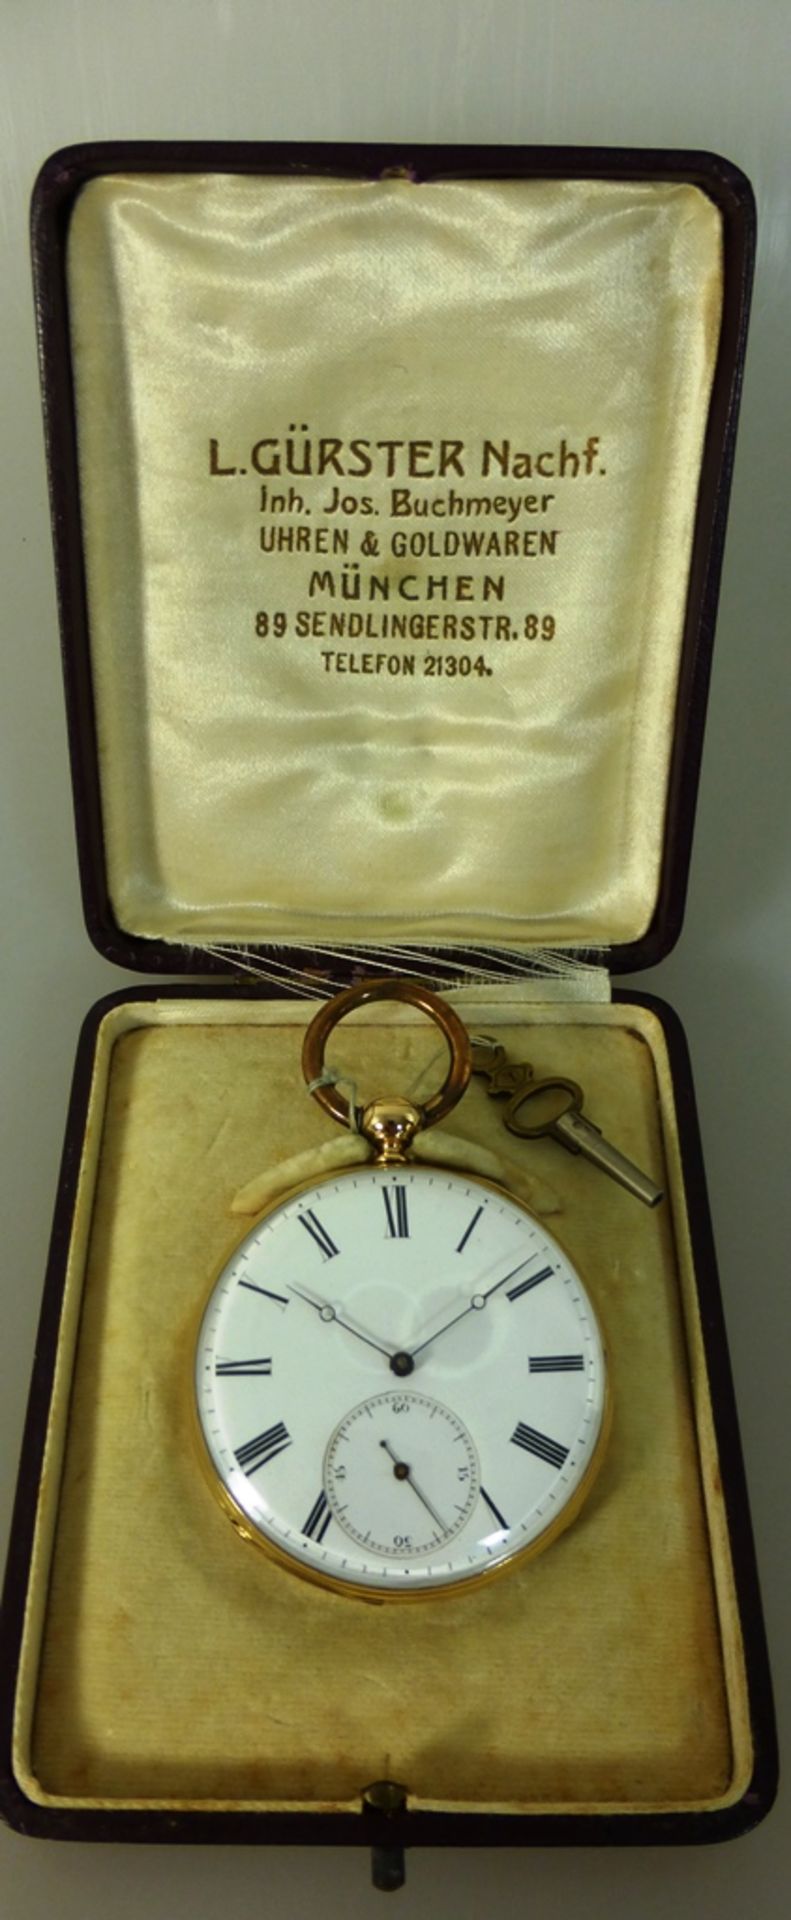 Goldtaschenuhr mit Schlüsselaufzug, bez. Treize, Gehäuse Feingehalt 750, gut erhaltenes